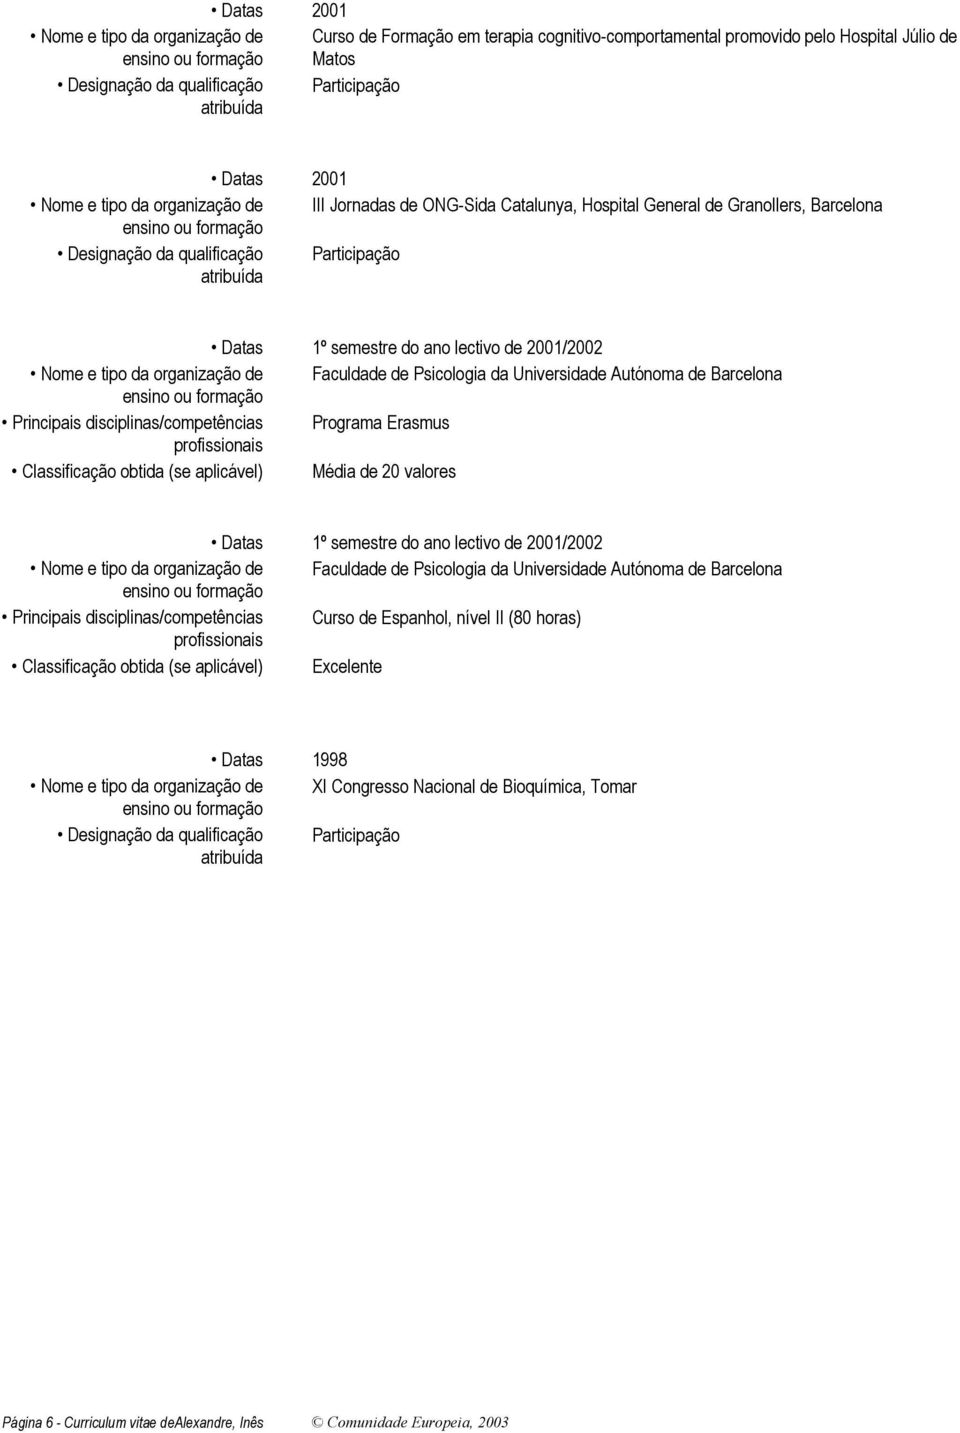 obtida (se aplicável) Média de 20 valores Datas 1º semestre do ano lectivo de 2001/2002 Faculdade de Psicologia da Universidade Autónoma de Barcelona Principais disciplinas/competências